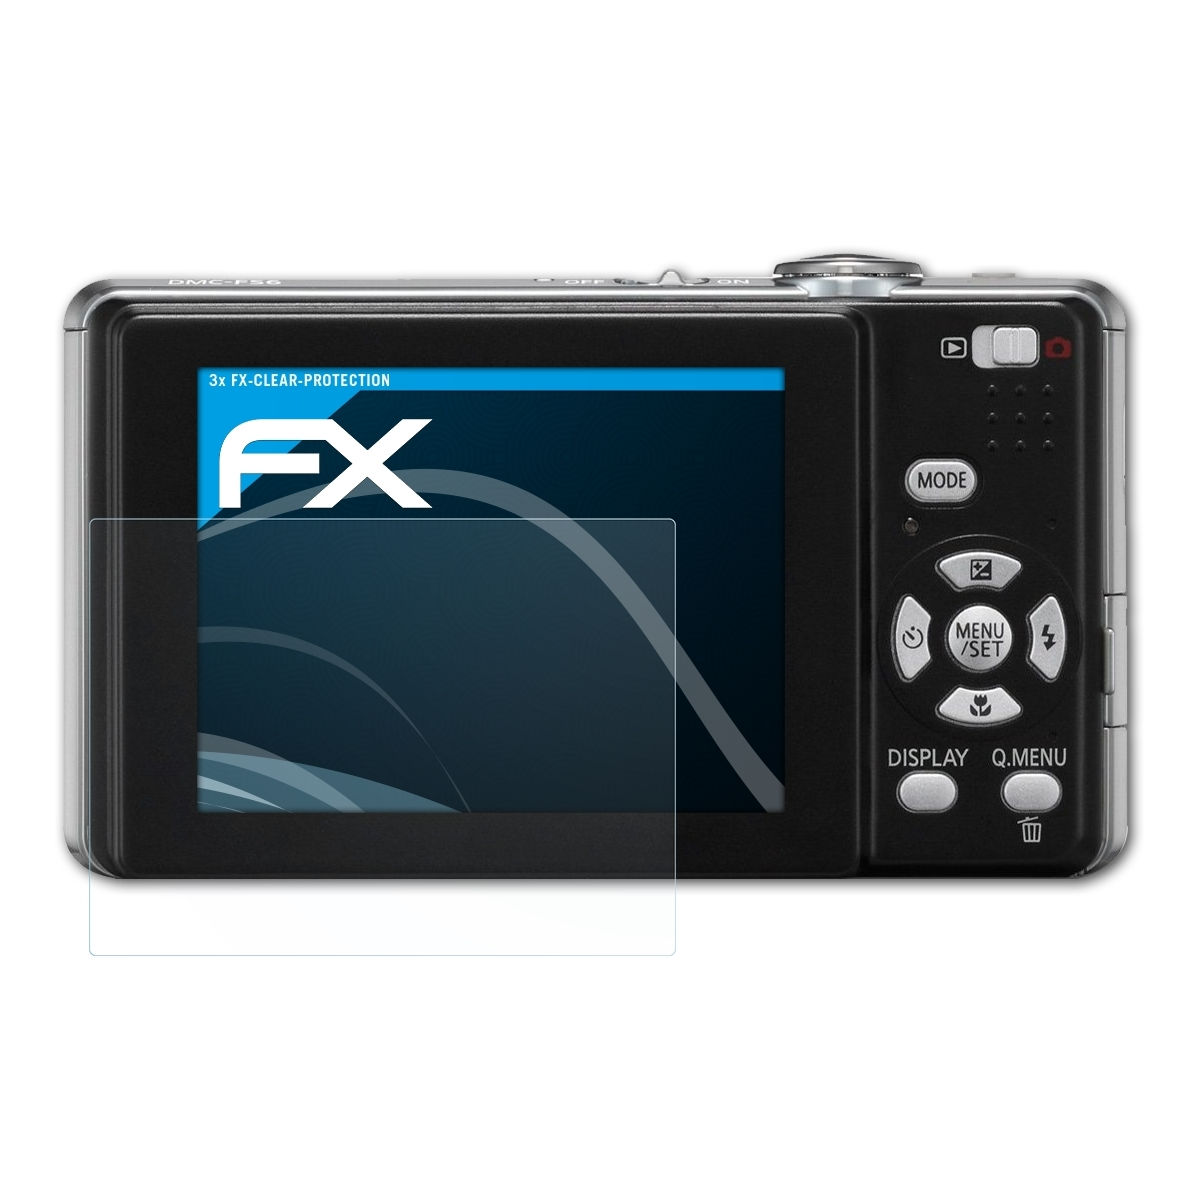 ATFOLIX 3x DMC-FS6) Lumix Displayschutz(für FX-Clear Panasonic